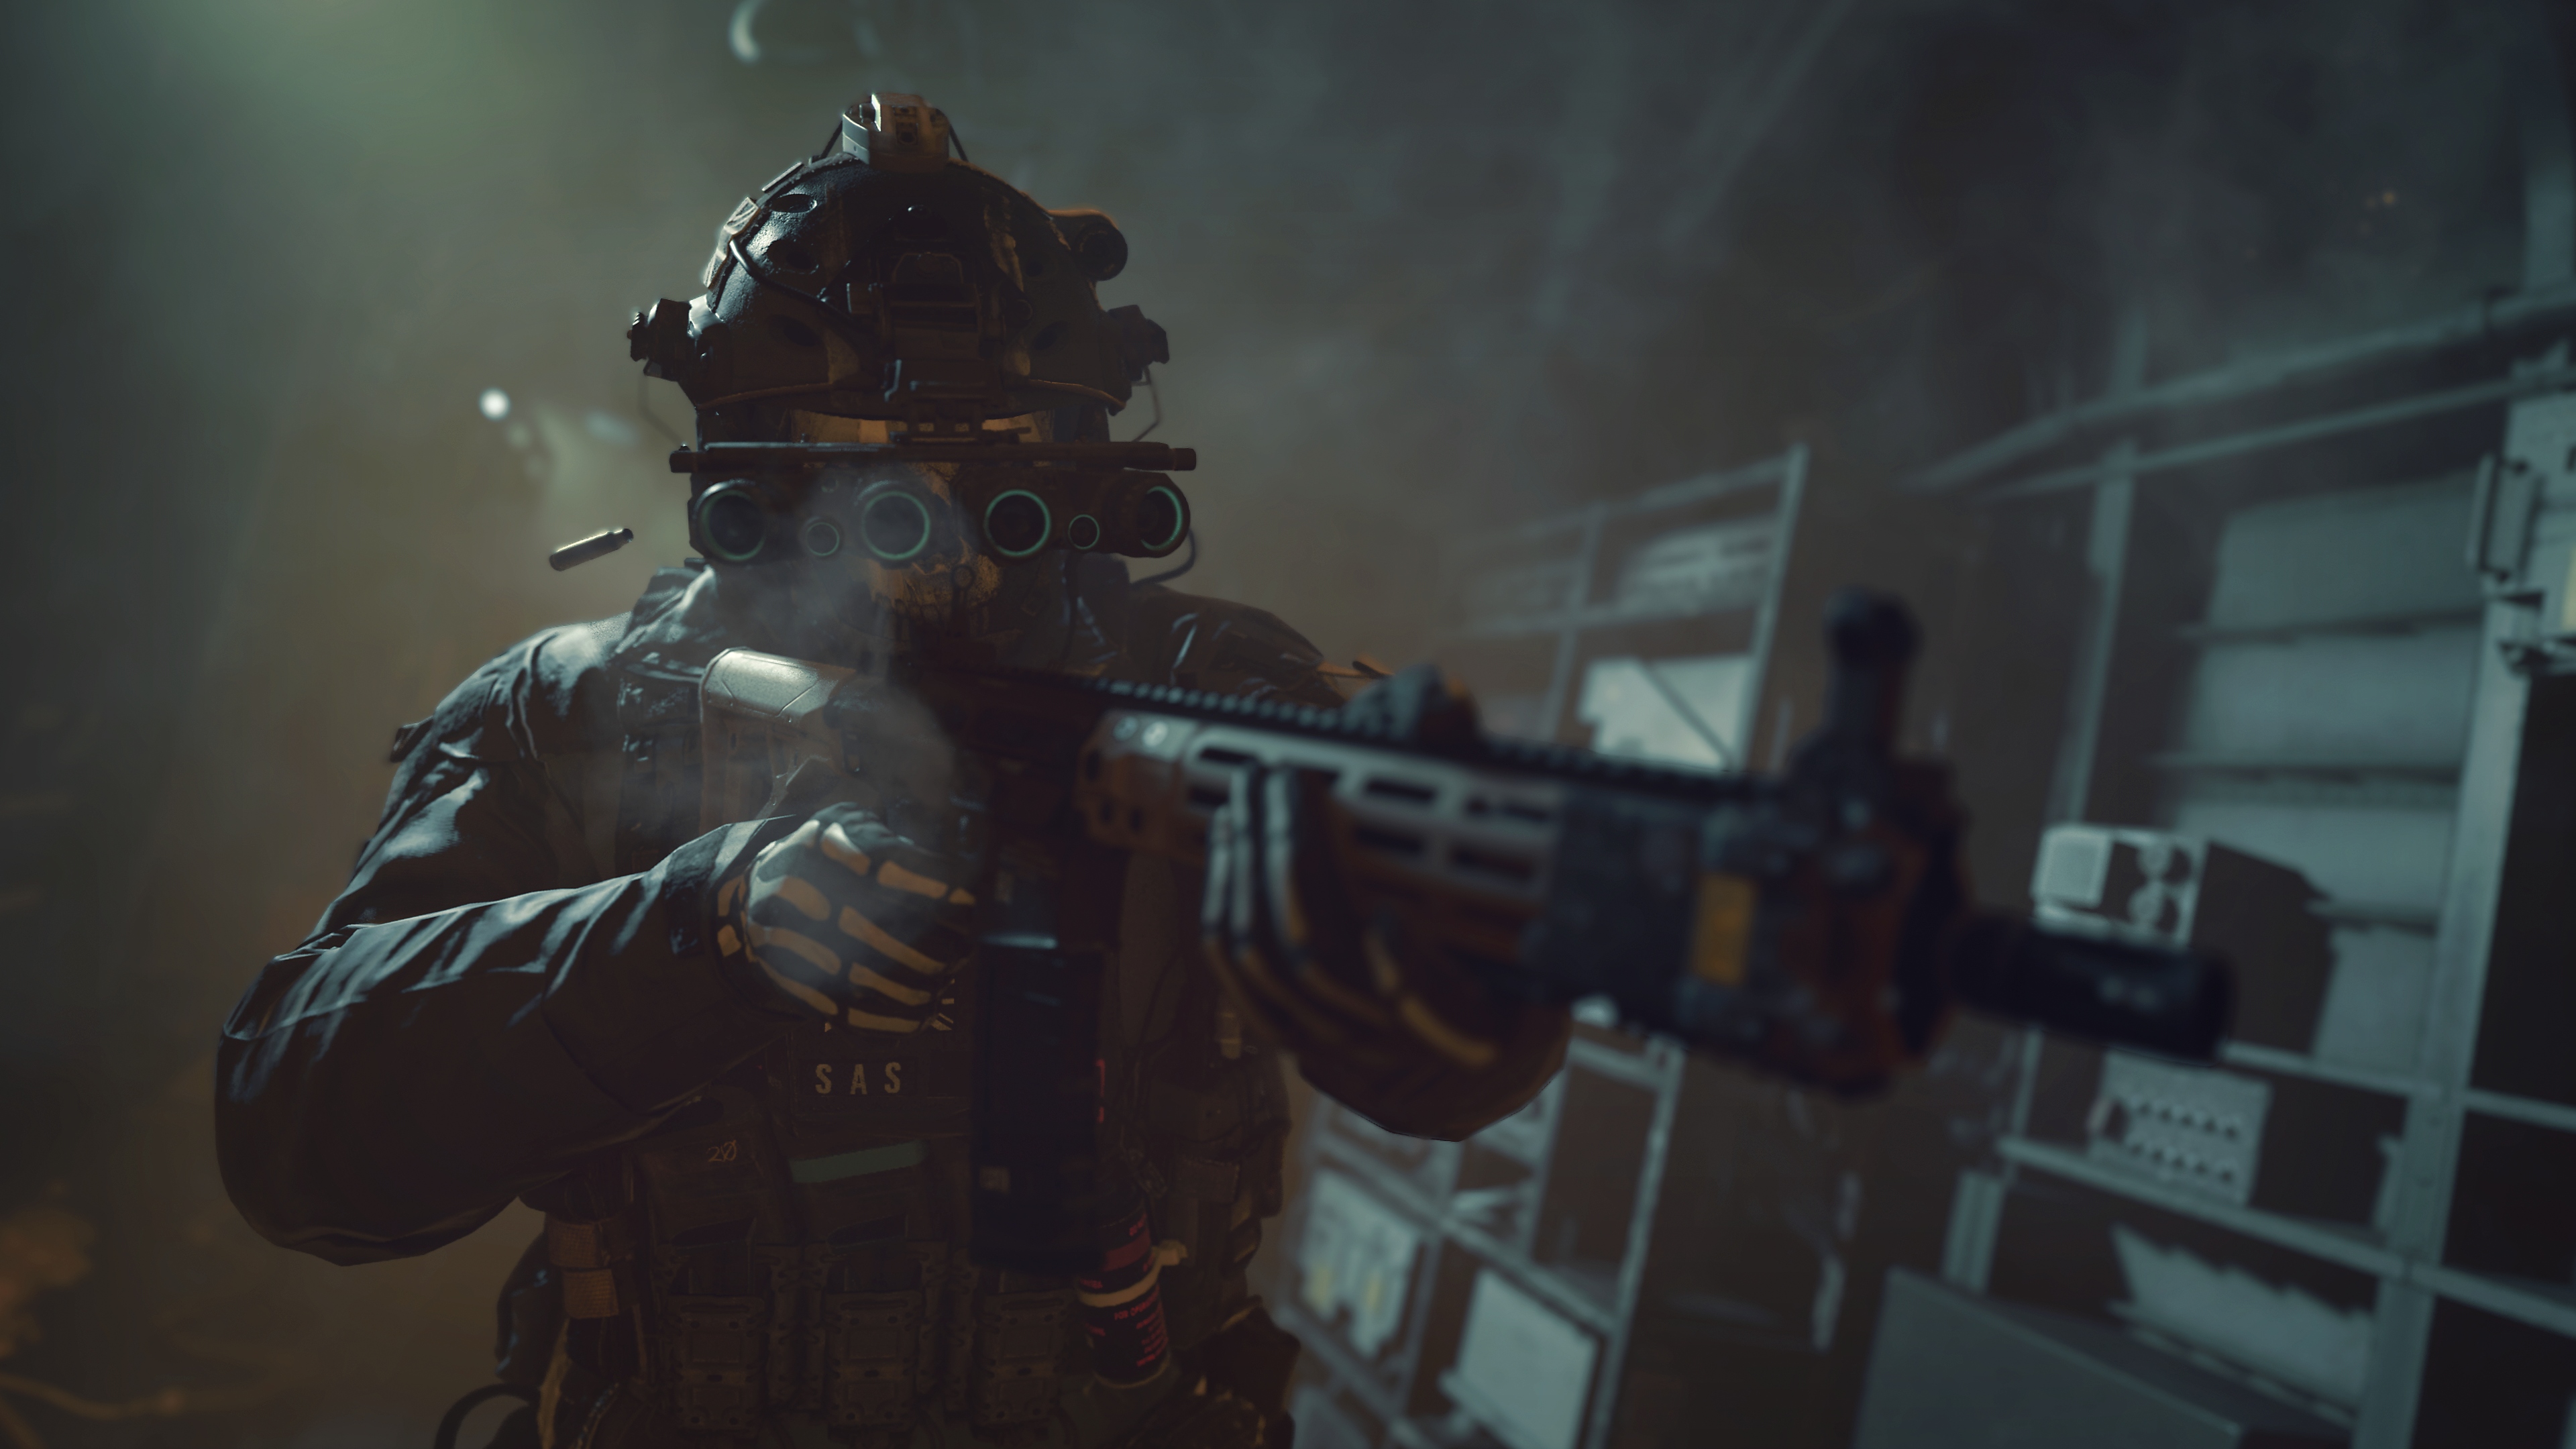 Call of Duty: Modern Warfare 2 2022 – kuvakaappaus jossa yönäkölasein varusteltu hahmo tähtää aseella